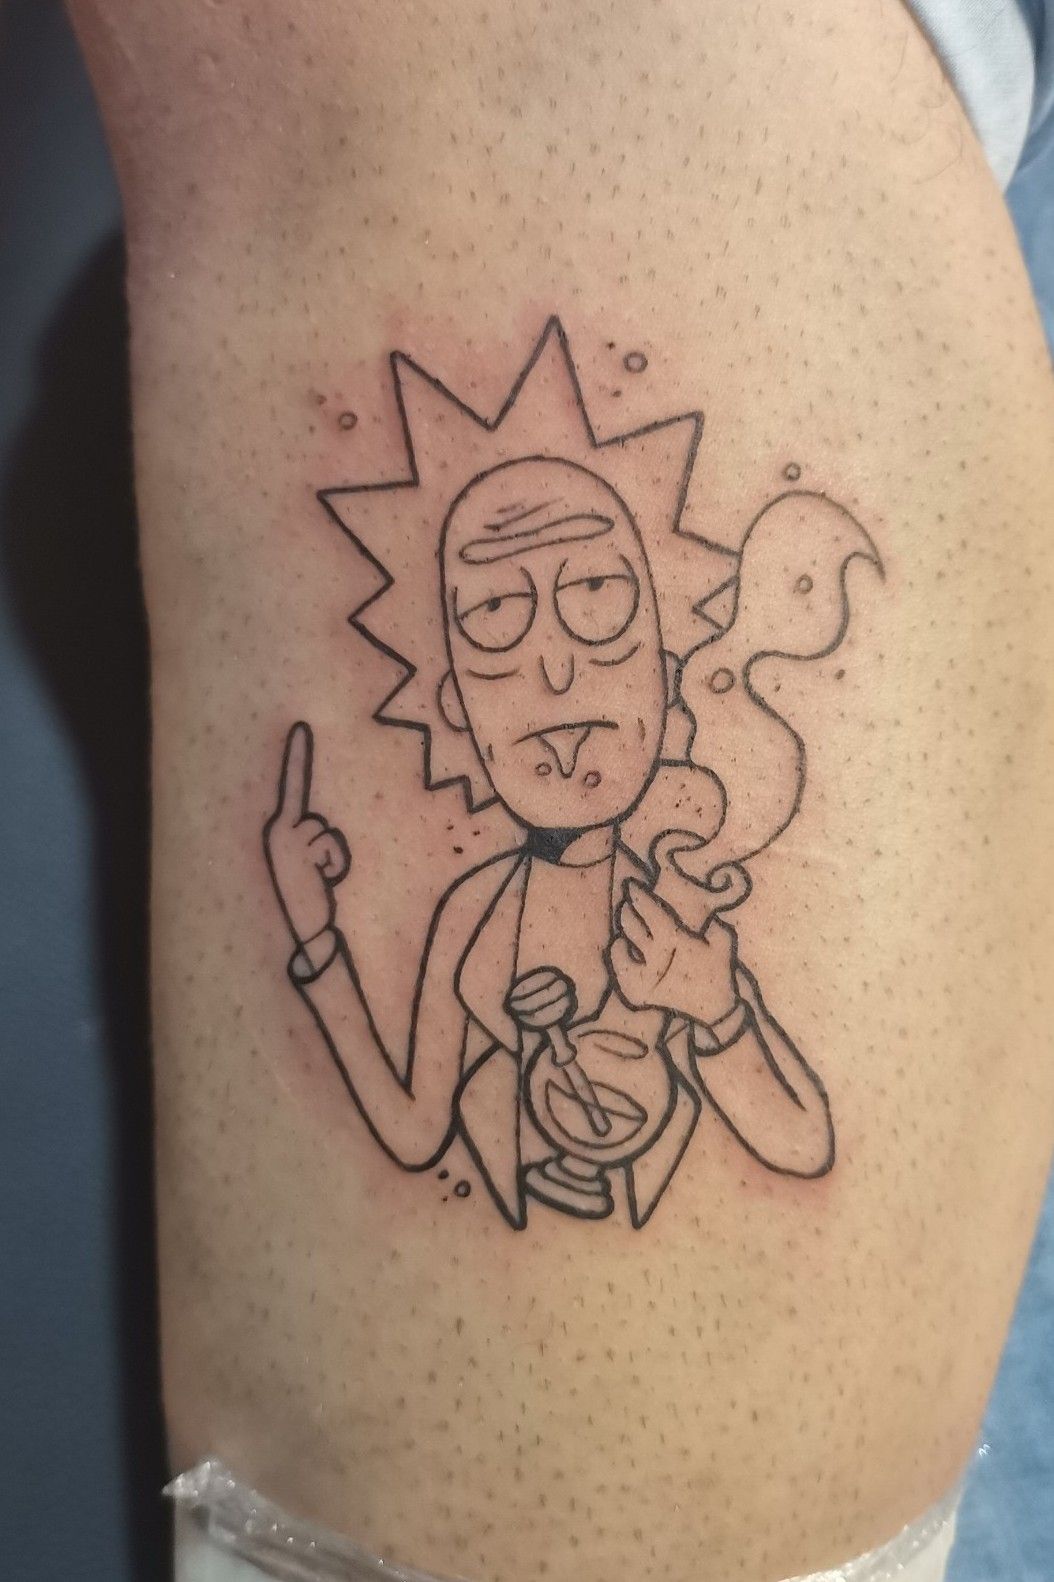 Bobartekbezkartek black tattoo  Rick i morty  Facebook